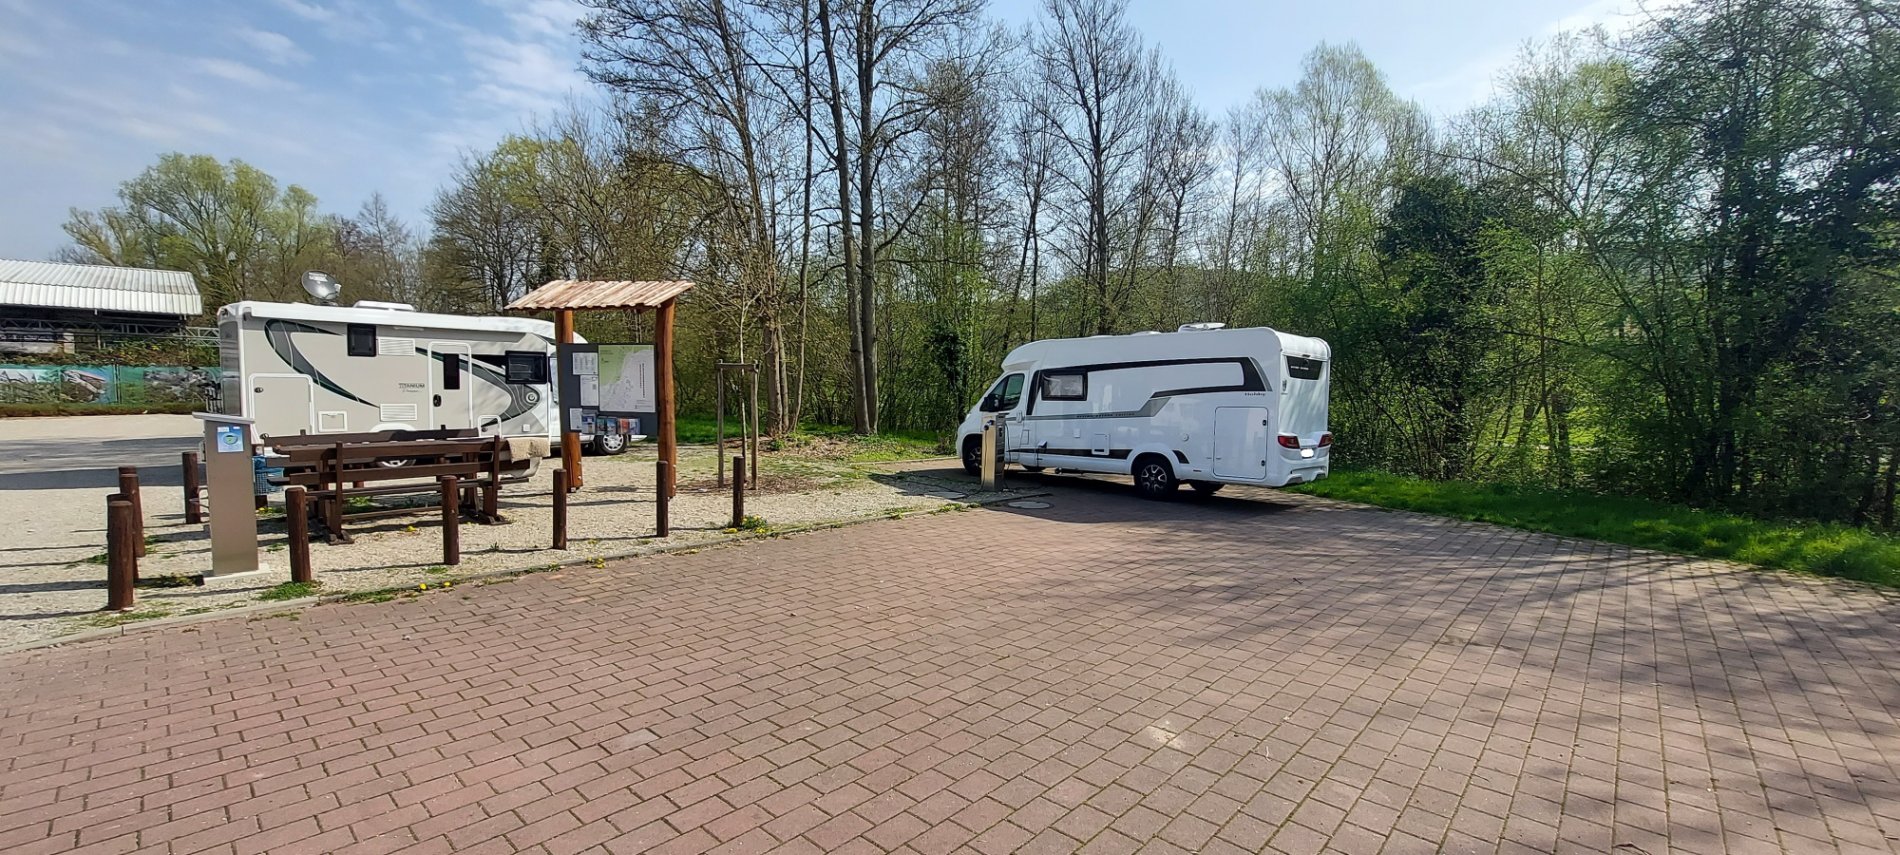 Wohnmobil im Odenwald / Odenwald